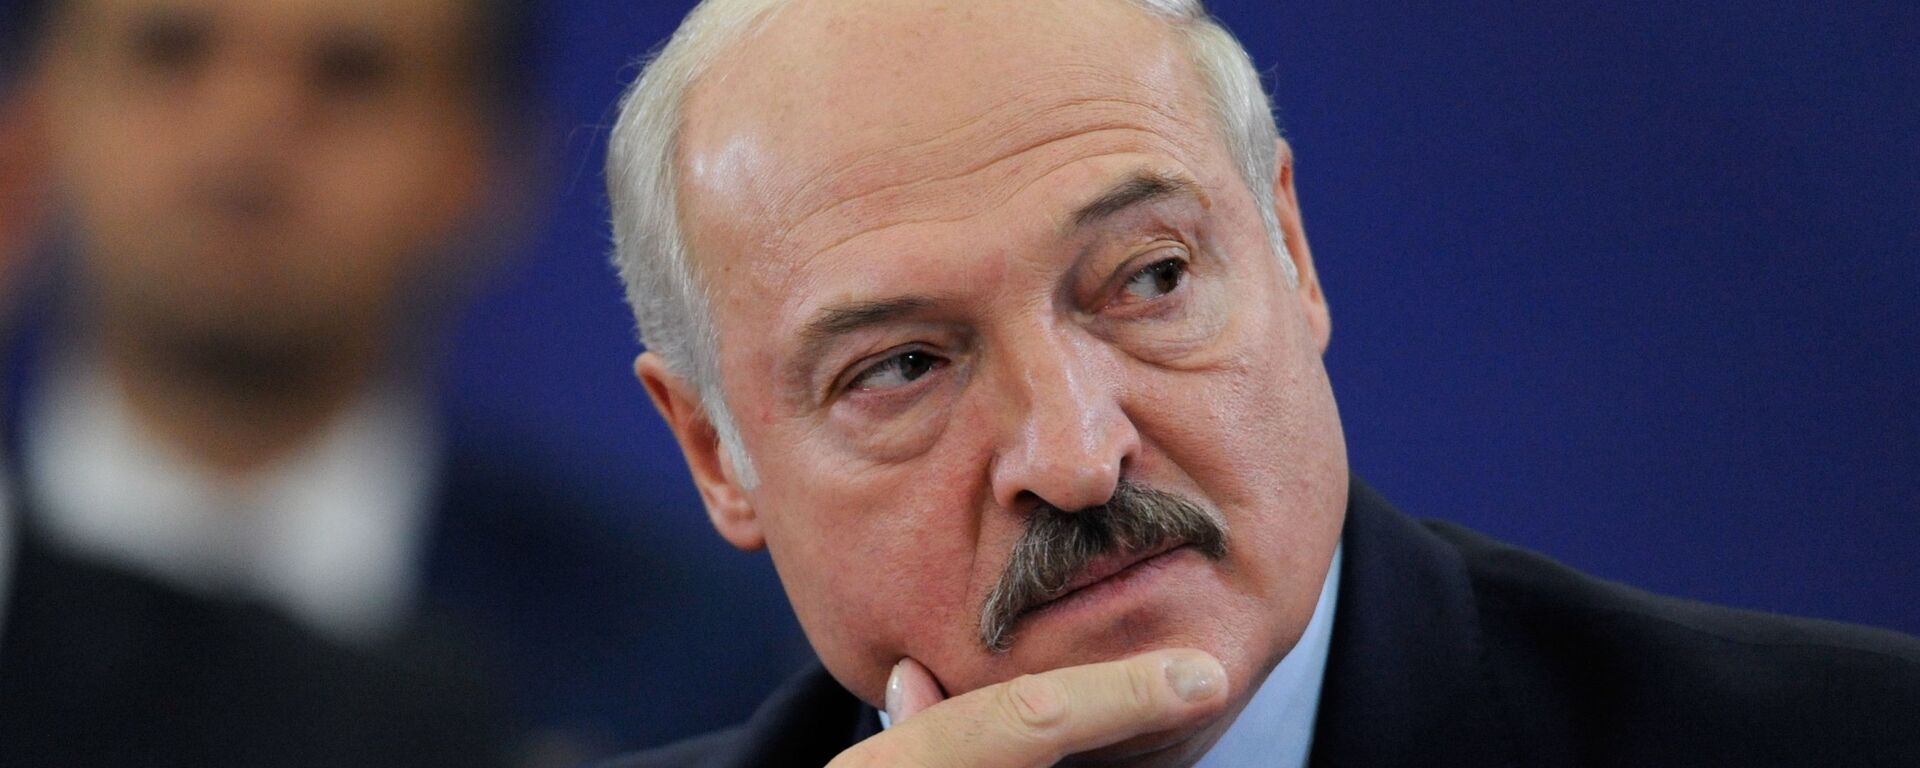 Alexandr Lukashenko, el presidente de Bielorrusia - Sputnik Mundo, 1920, 10.05.2022